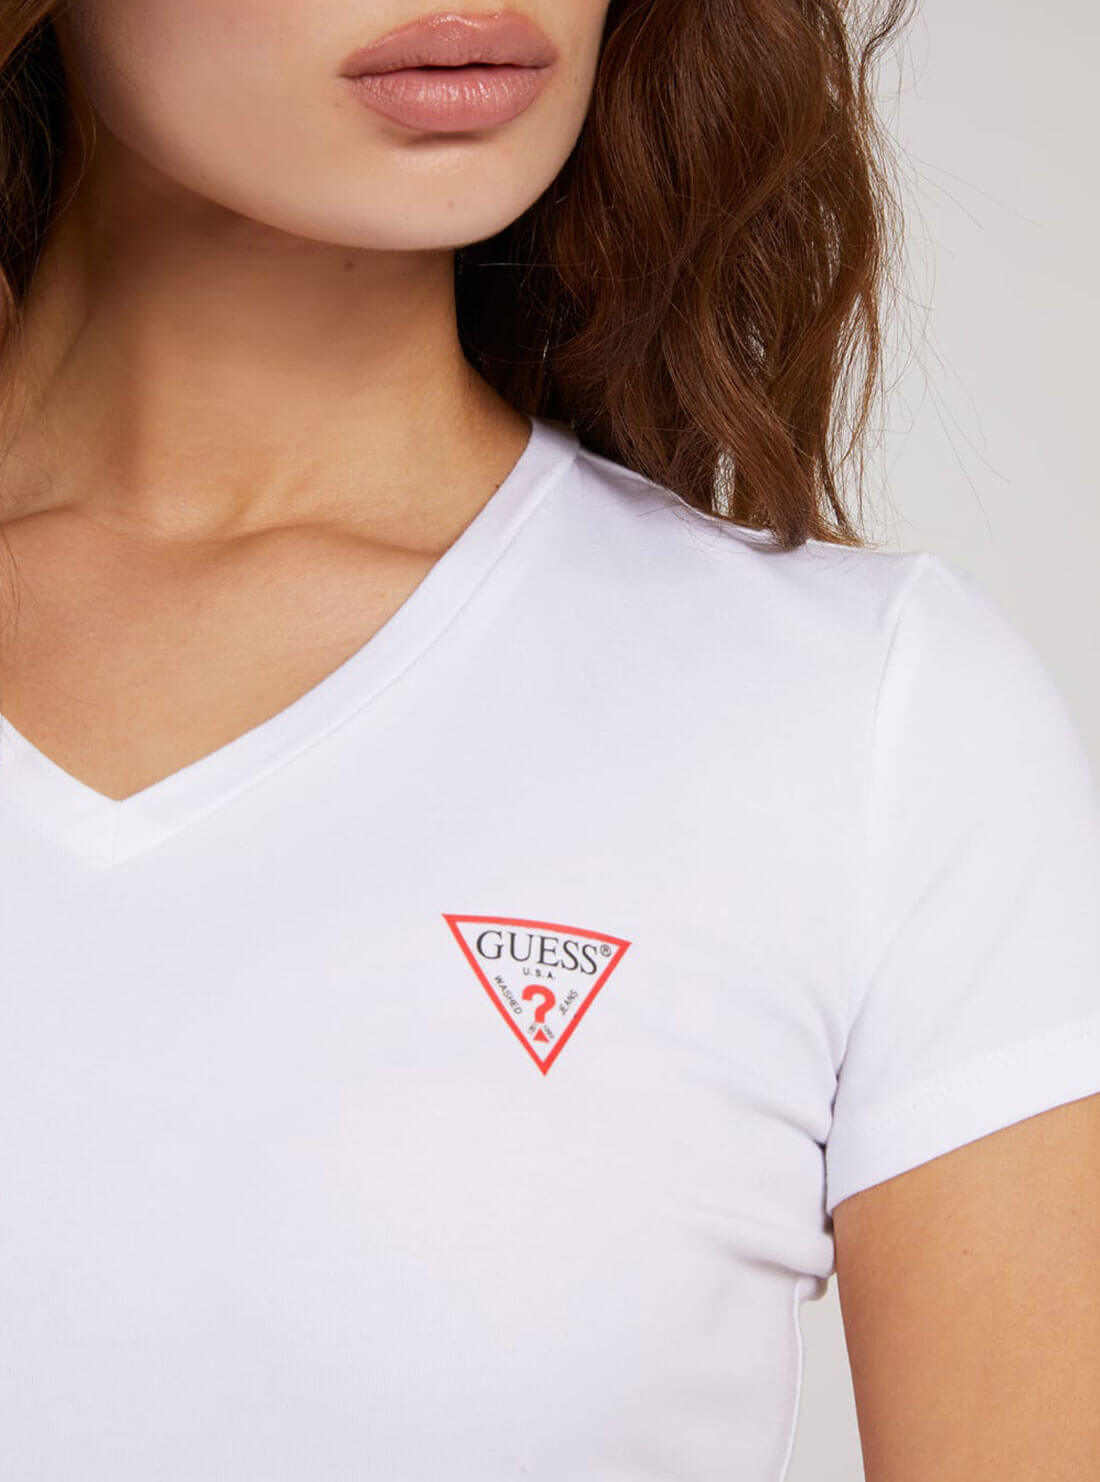 GUESS Womens White V-Neck Logo T-Shirt W1YI1AJ131 Detail View